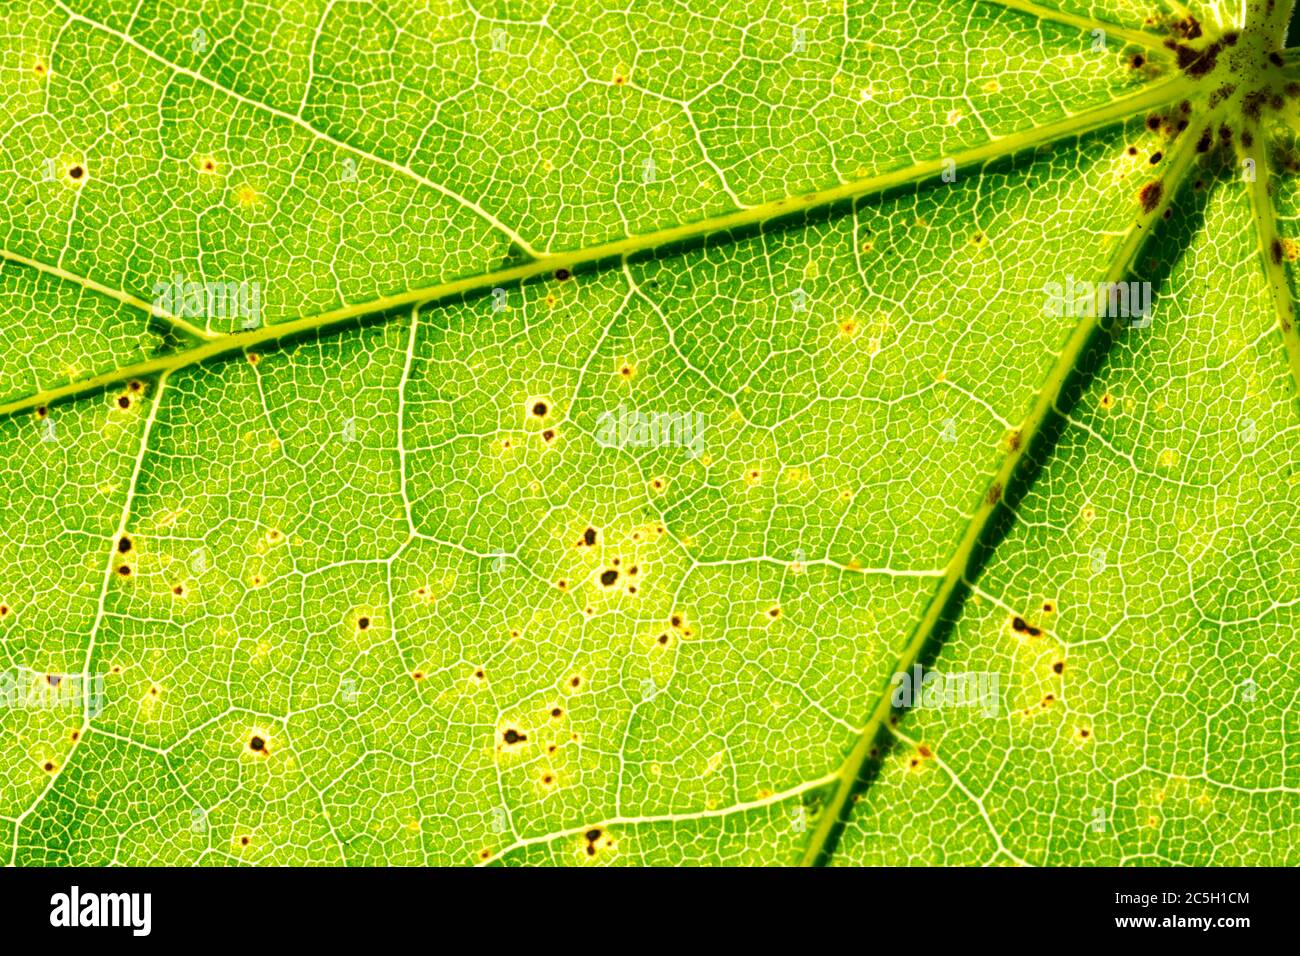 Gros plan vue détaillée d'une feuille d'un arbre sycomore (Acer pseudoplatanus) montrant les veines et la structure cellulaire Banque D'Images